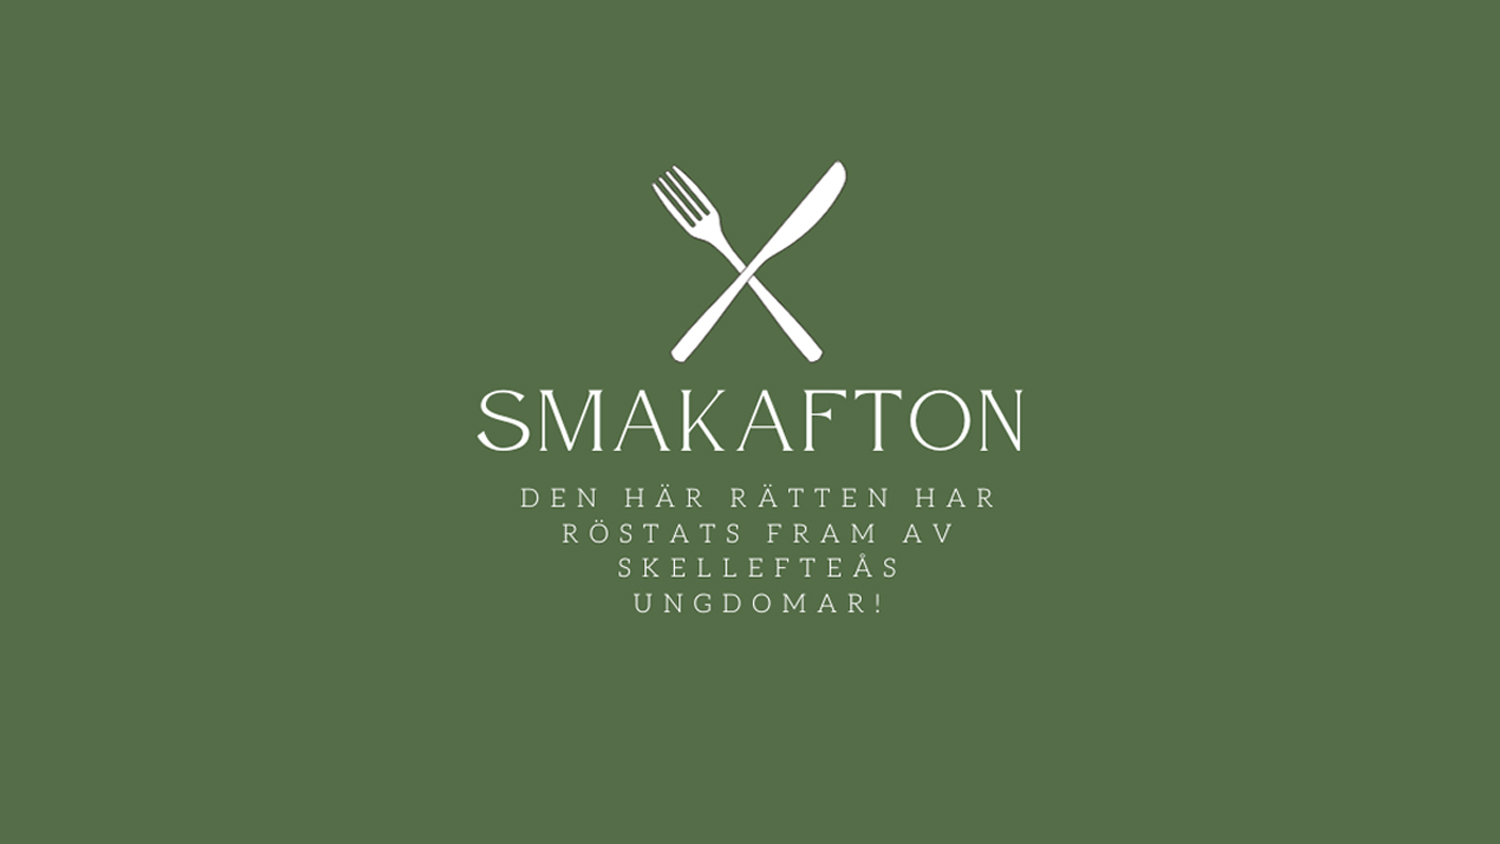 Grön bakgrund, illustration av bestick samt texten: Smakafton. Den här rätten har röstats fram av Skellefteås ungdomar!